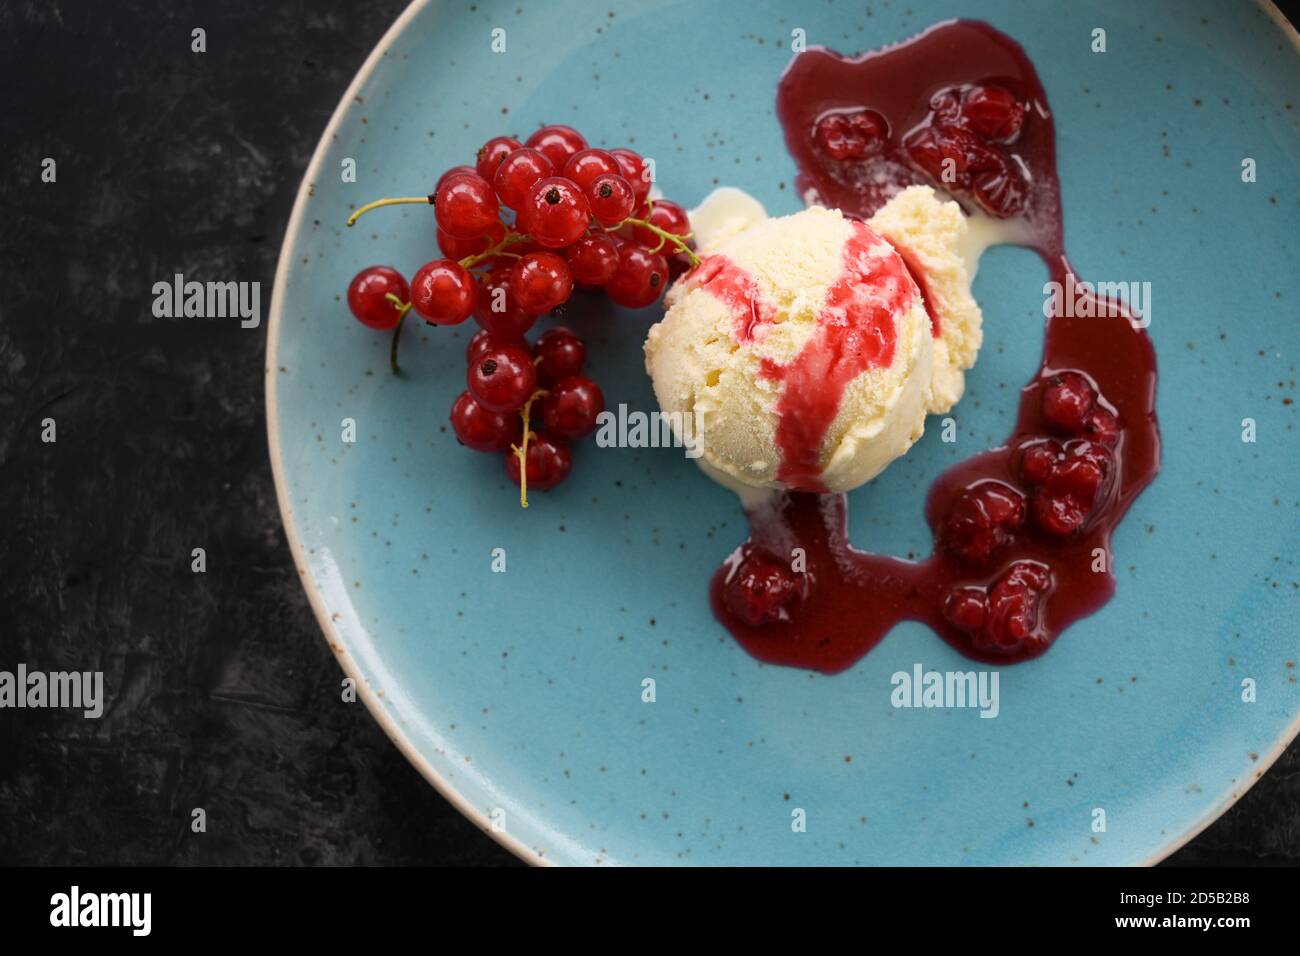 Cuillère à crème glacée à la vanille avec des raisins de Corinthe rouges et une sauce aux fruits sur une assiette bleue, fond sombre, espace de copie, vue en grand angle du dessus, mise au point sélectionnée Banque D'Images